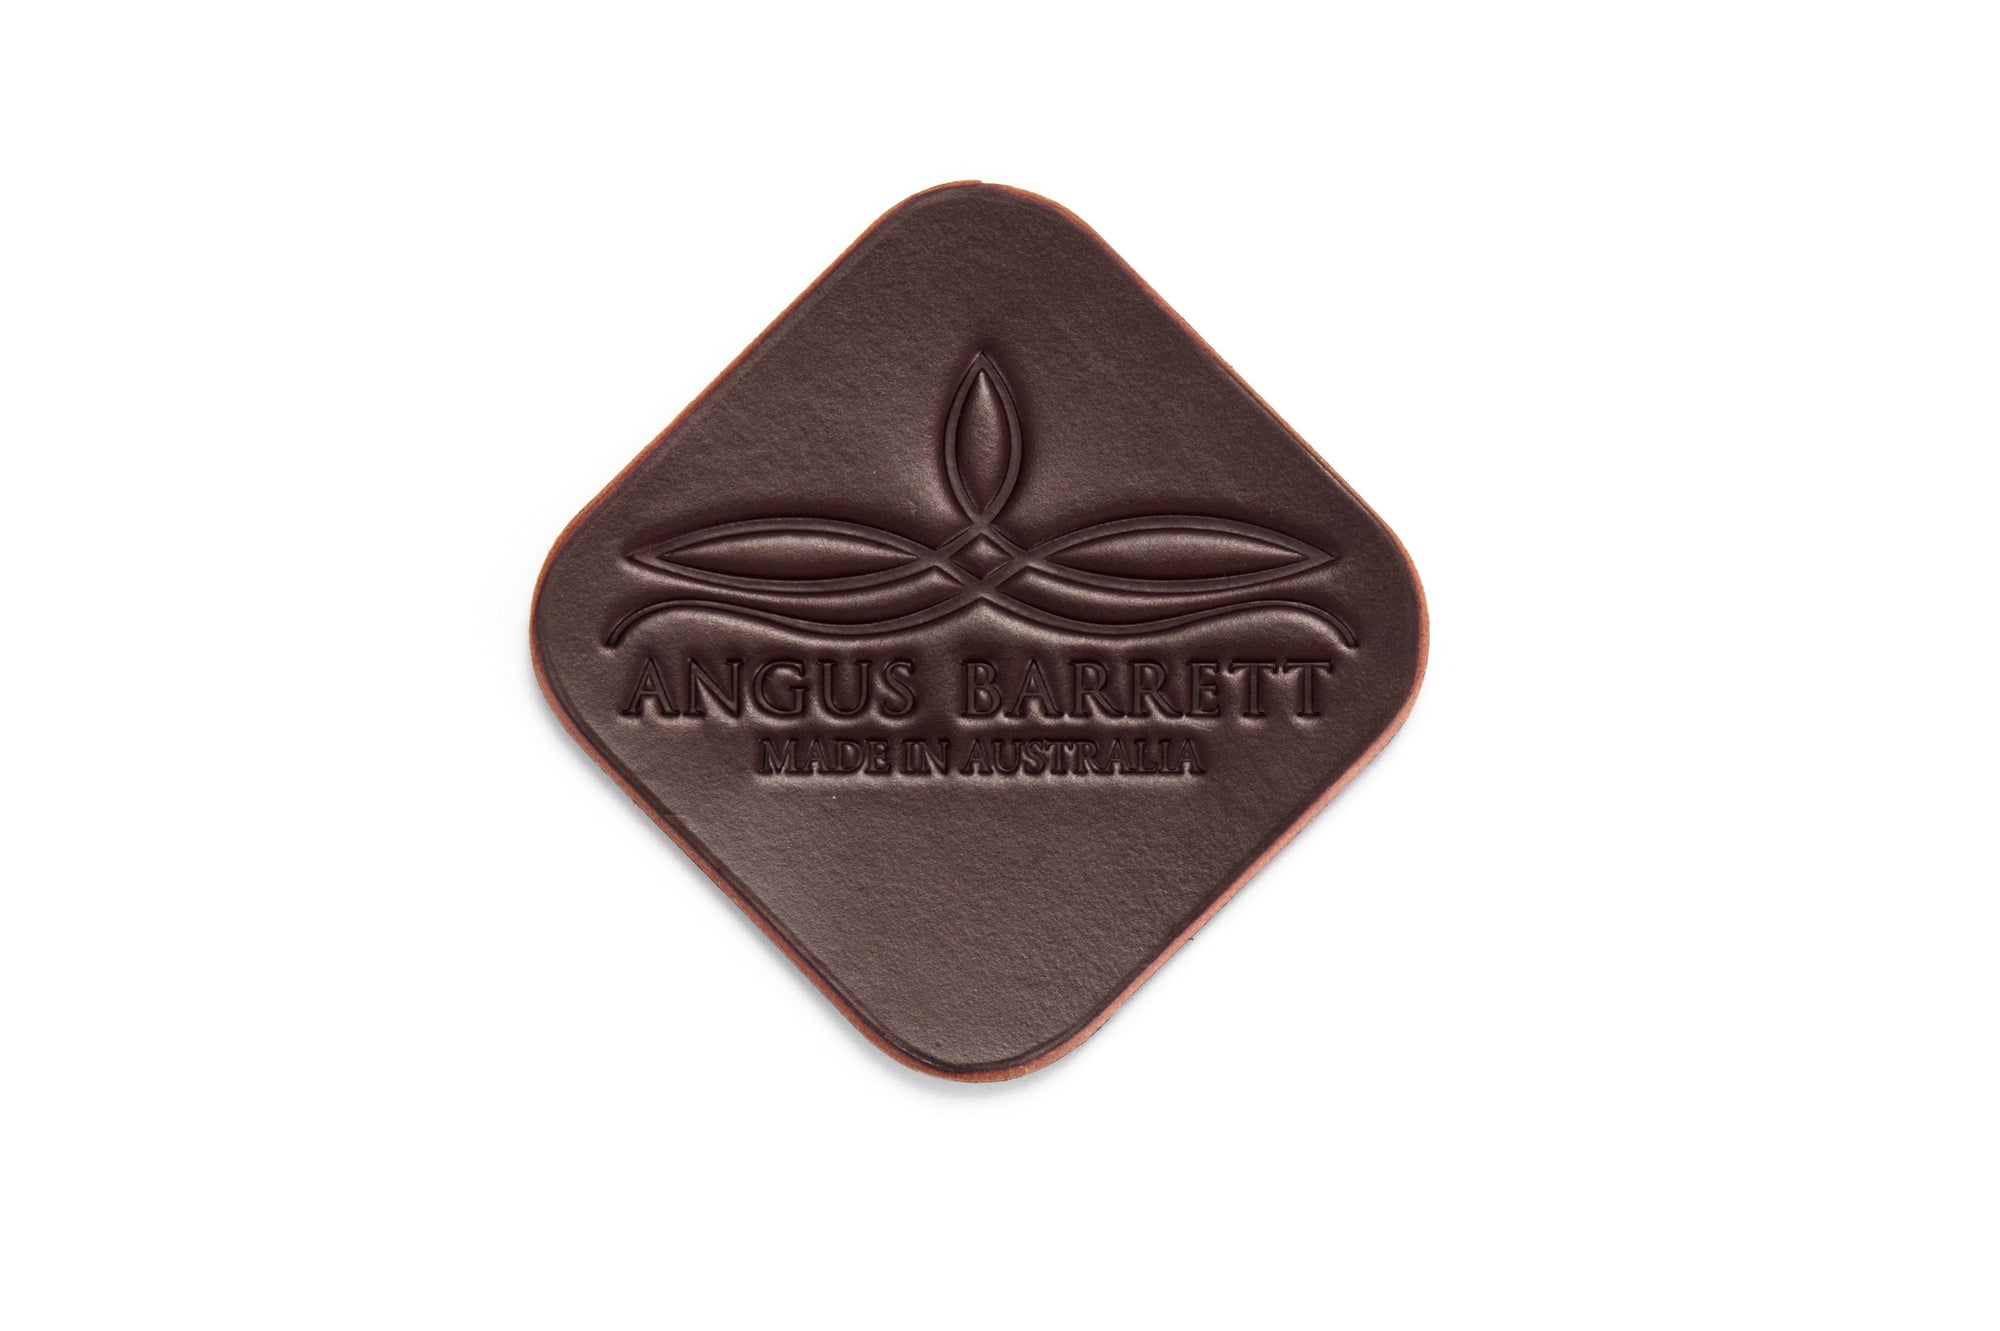 Angus Barrett Saddlery Leather Coasters